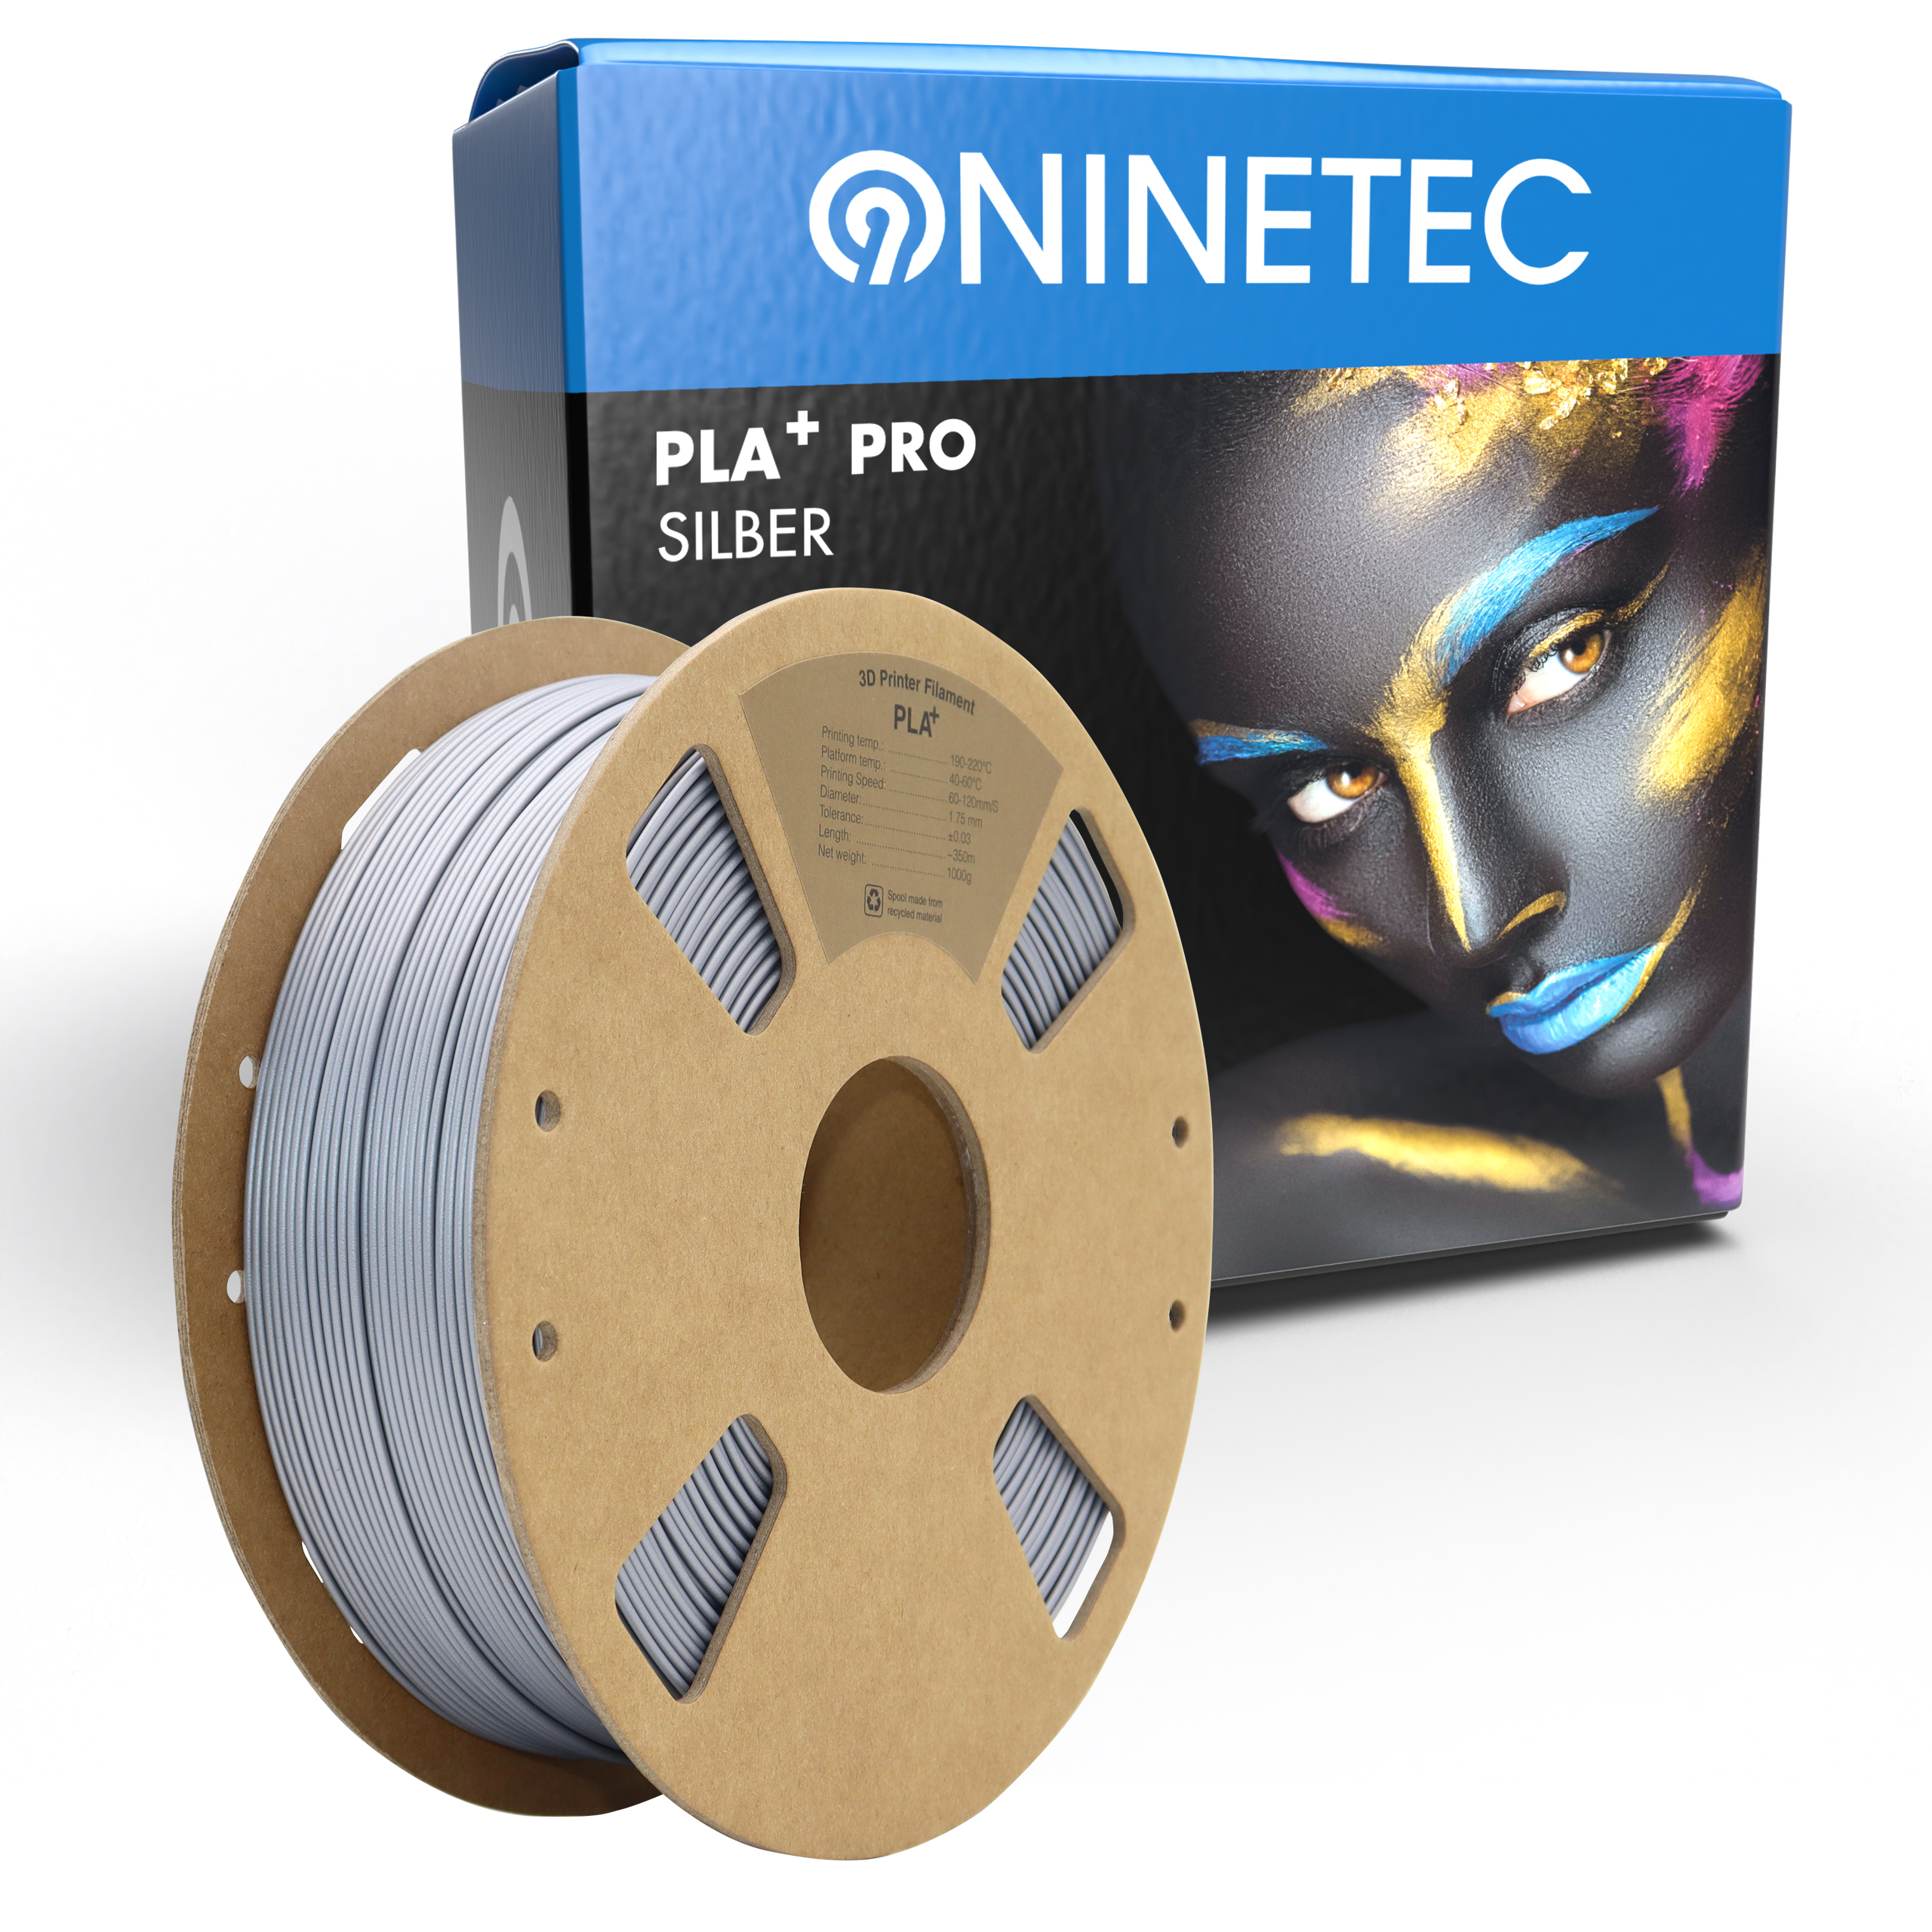 NINETEC PLA+ PRO silber Filament